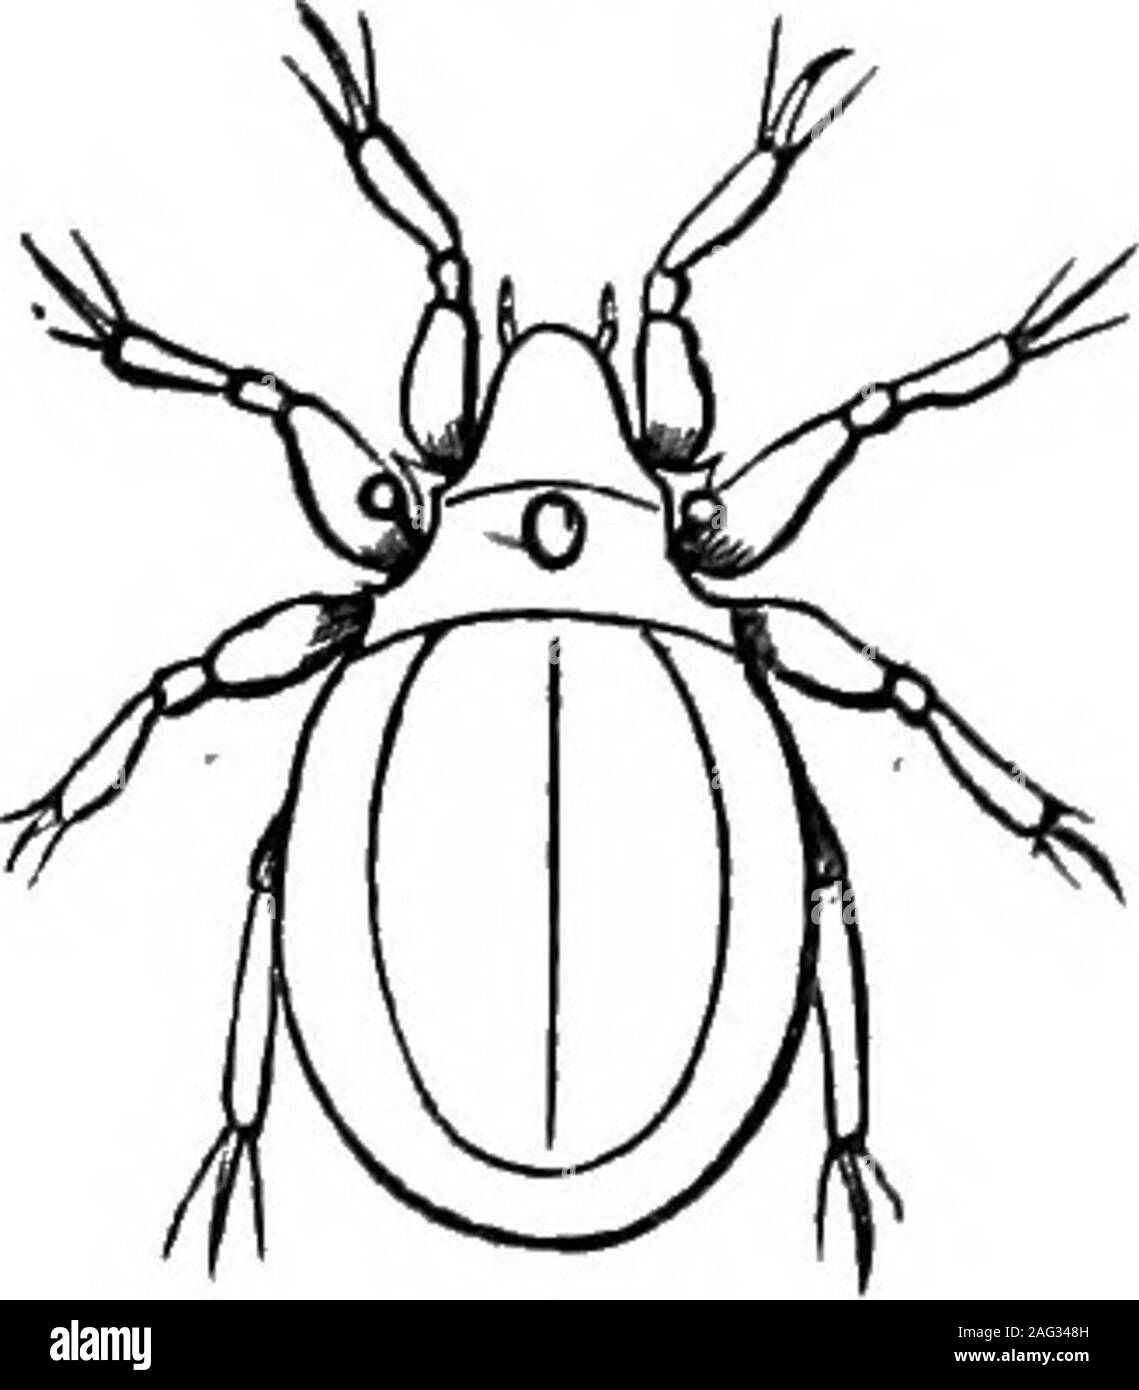 . [Vorträge]. Junge Ixades albipictut. Diese Teile bilden ein Schnabel, 22 Vermont Boakd von AGEicuLTUEtE. Abb. 9. Die Milbe kann unterstellen in das Fleisch seines Wirtes, oben auf das Blut ofwhich viele Arten bestehen. Während sehr viele der Milben auf Tiere parasitäre, einige devoureggs von Insekten. Die Ifotherus (Abb. 9) zerstört Millionen von Der eggsof Käfer, Wurm, und es wird gesagt, dass es auch saugt die Eier von theChinch bug. Einige dieser Arten sind schädlich für den Menschen, dadie Sarcoptes, dass burrows unter die Haut offilthy Menschen, wodurch eine Krankheit einmal so häufig - Juckreiz. Der Käse Milben Stockfoto